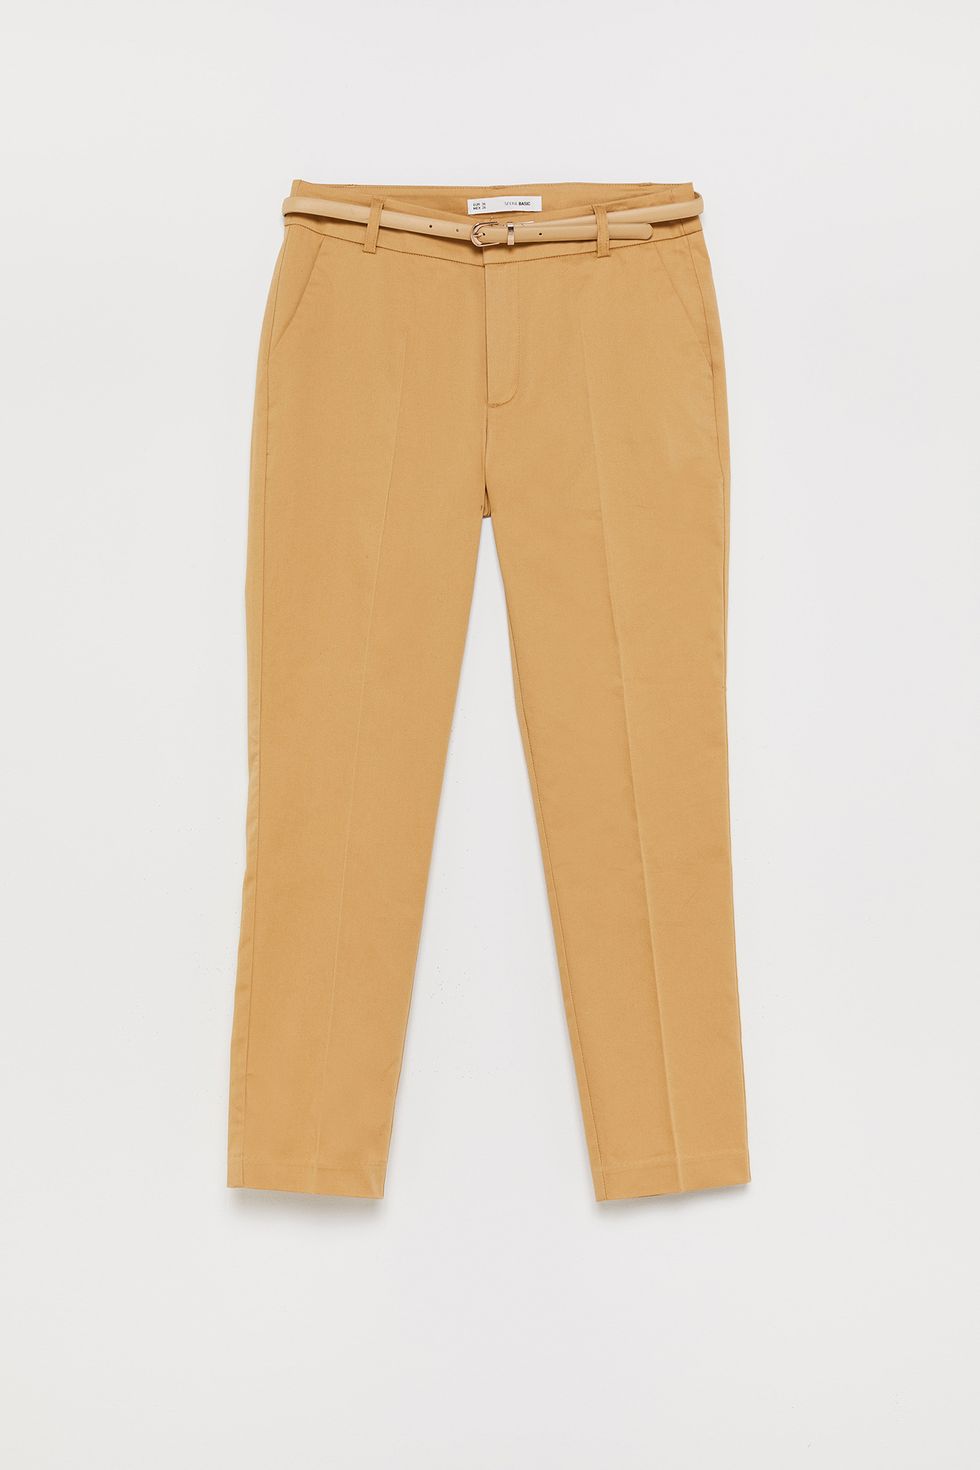 10 pantalones beige de nueva temporada